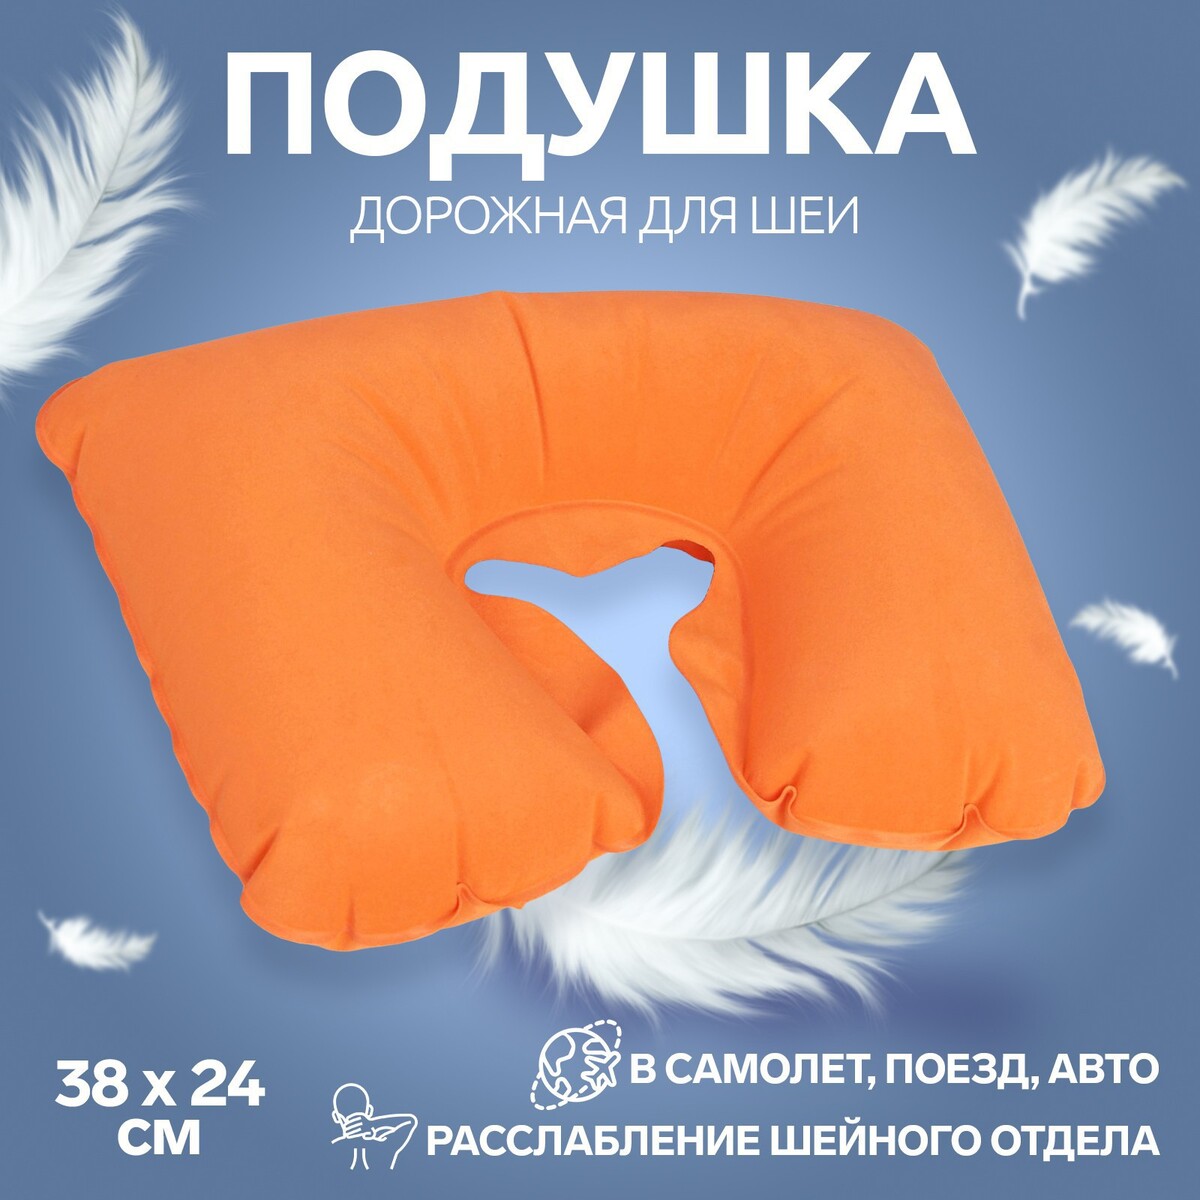 Подушка для шеи дорожная, надувная, 38 × 24 см, цвет оранжевый подушка надувная